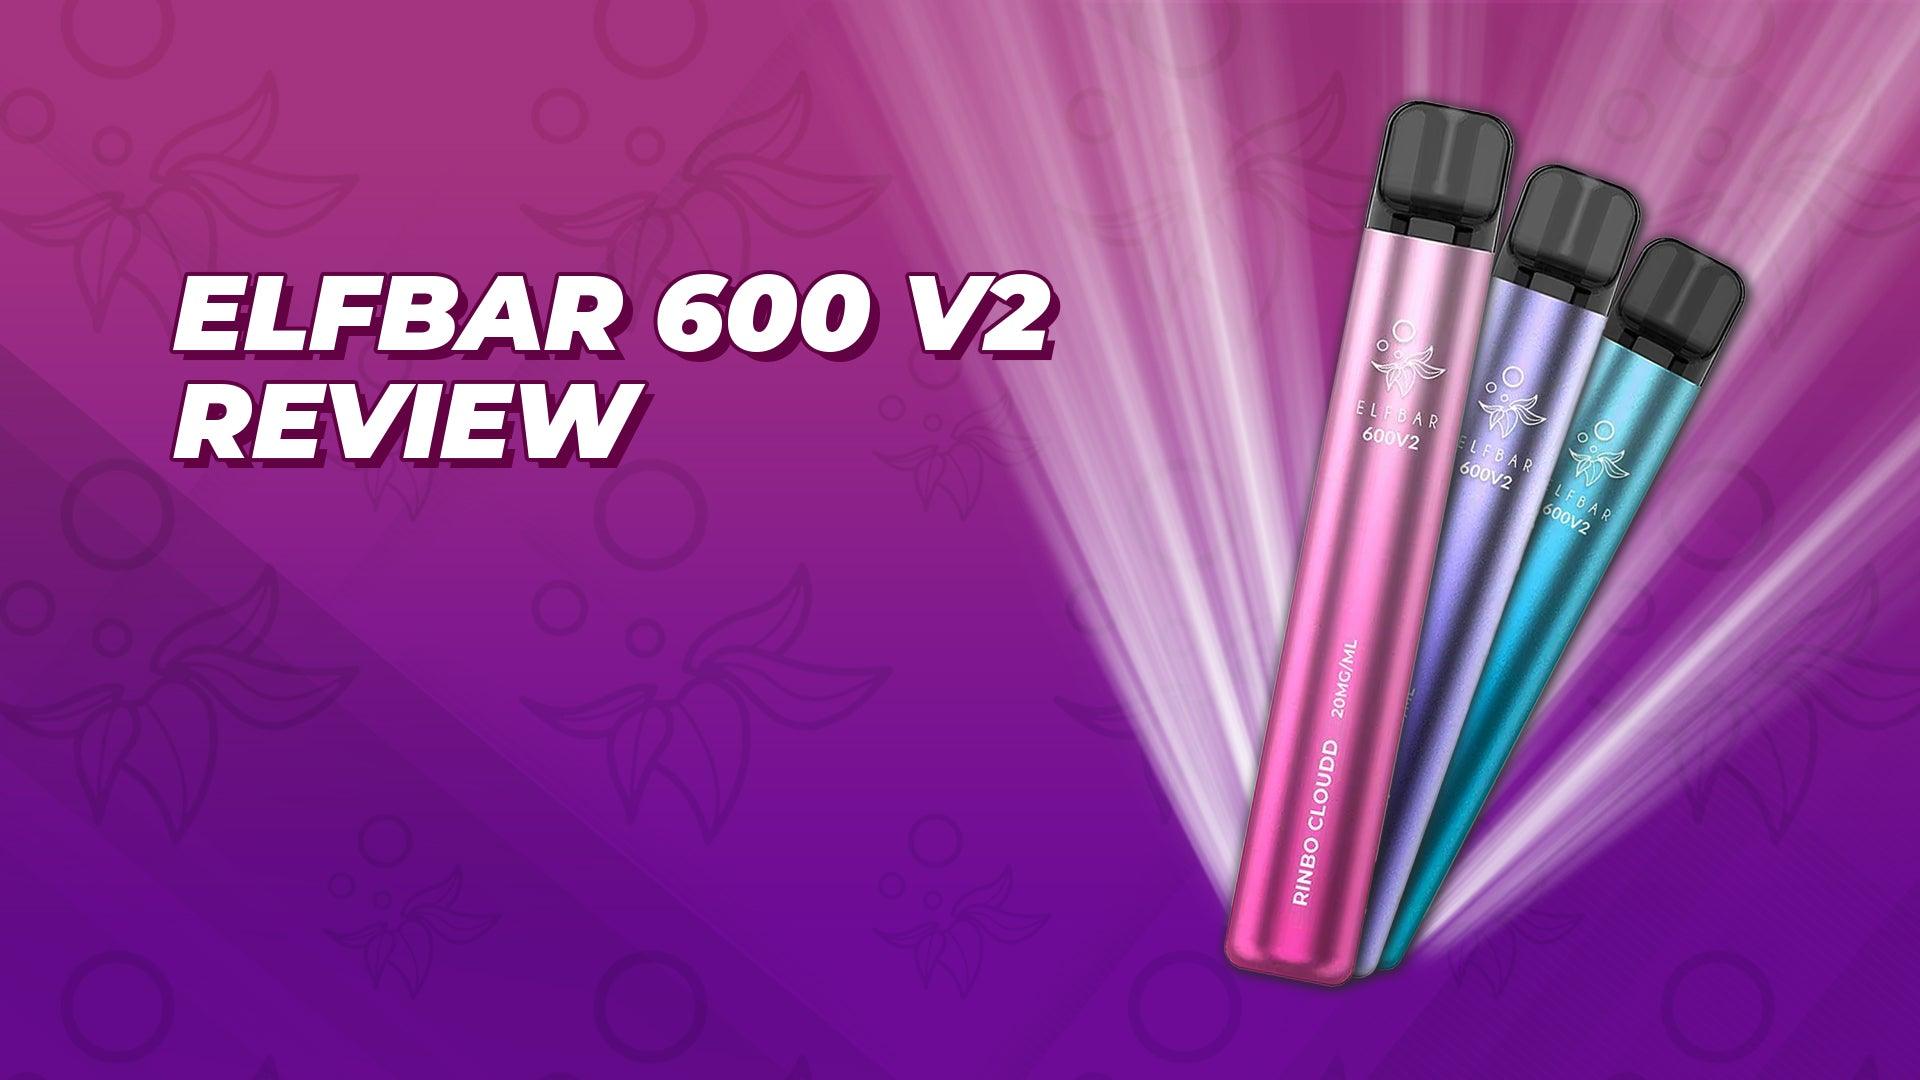 Elf Bar 600 V2 Review - Brand:Elf Bar, Category:Vape Kits, Sub Category:Disposables